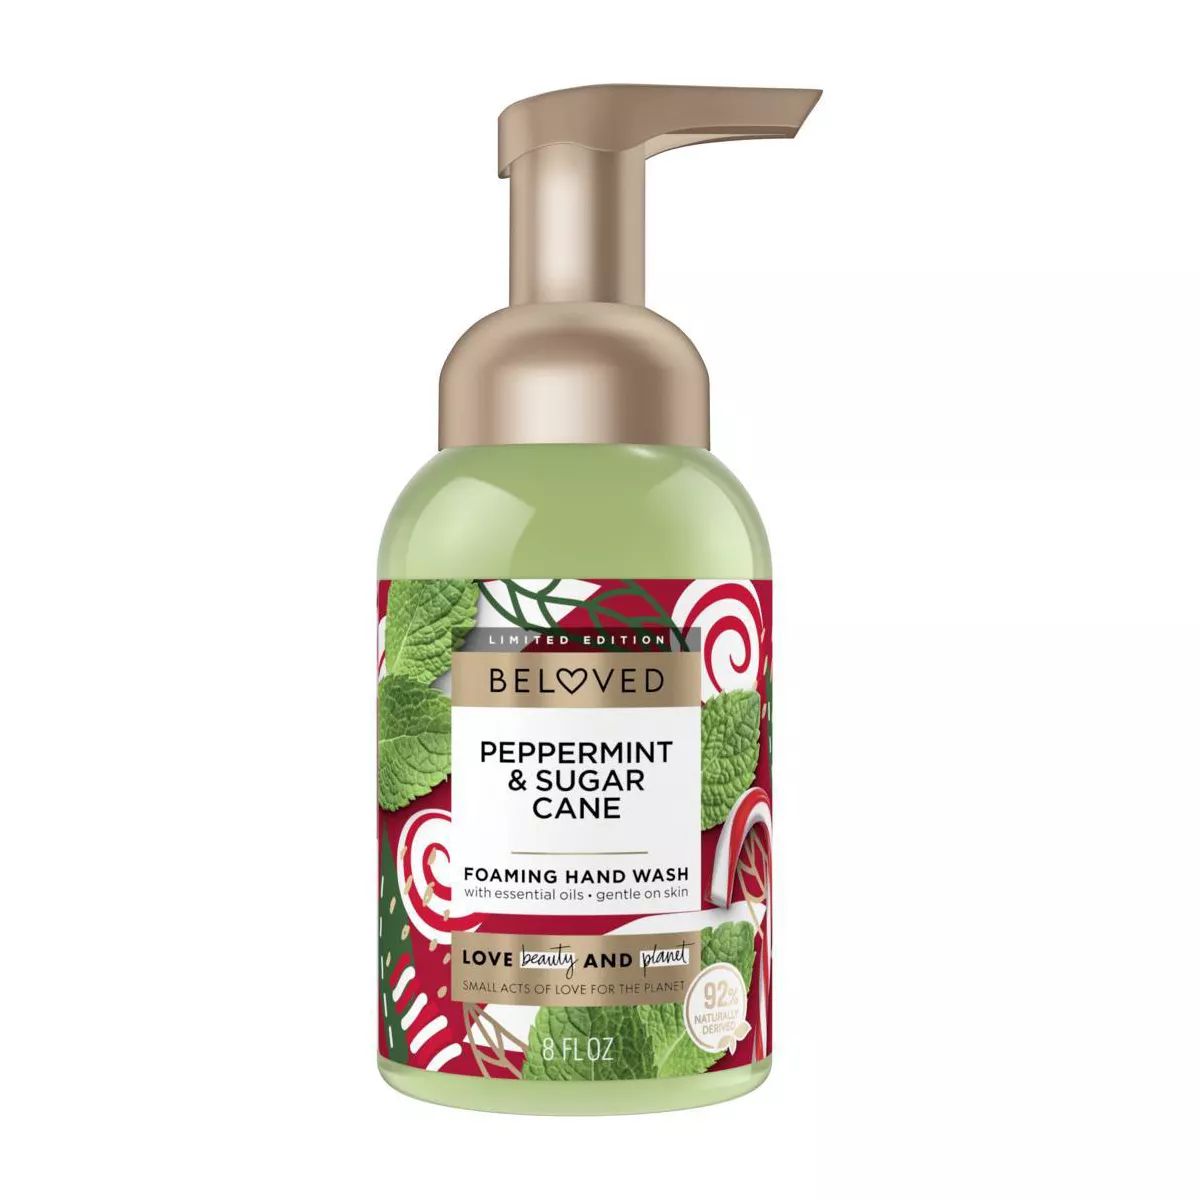 Beloved Peppermint & Sugar Cane Foaming Hand Wash - 8 fl oz | Target